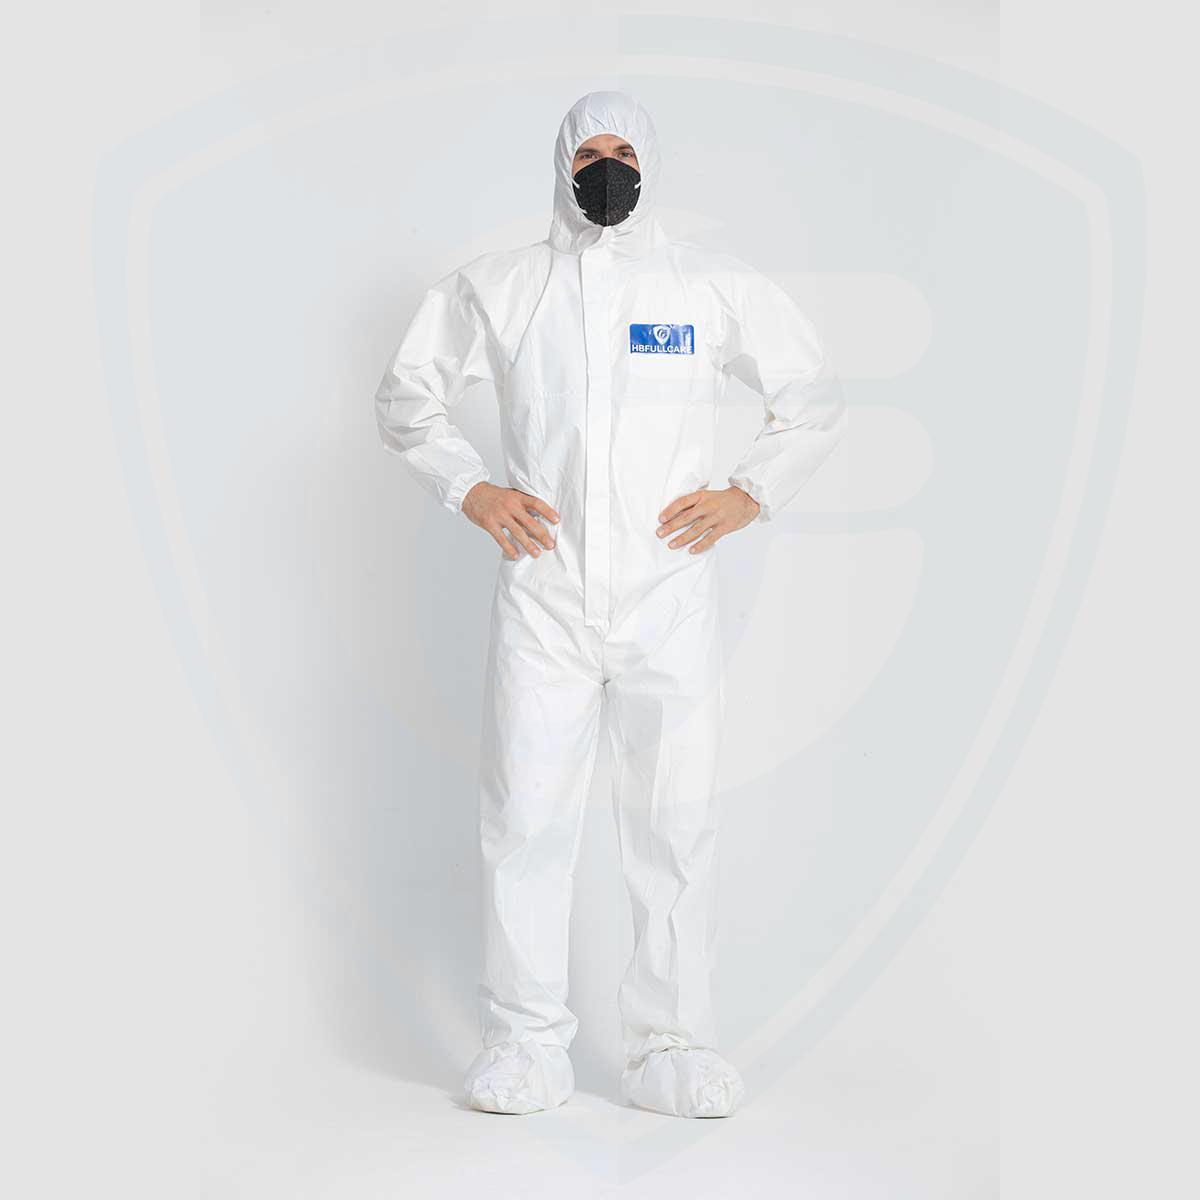 Capuche attachée par vêtements de travail protecteurs jetables blancs de peinture de jet de sécurité